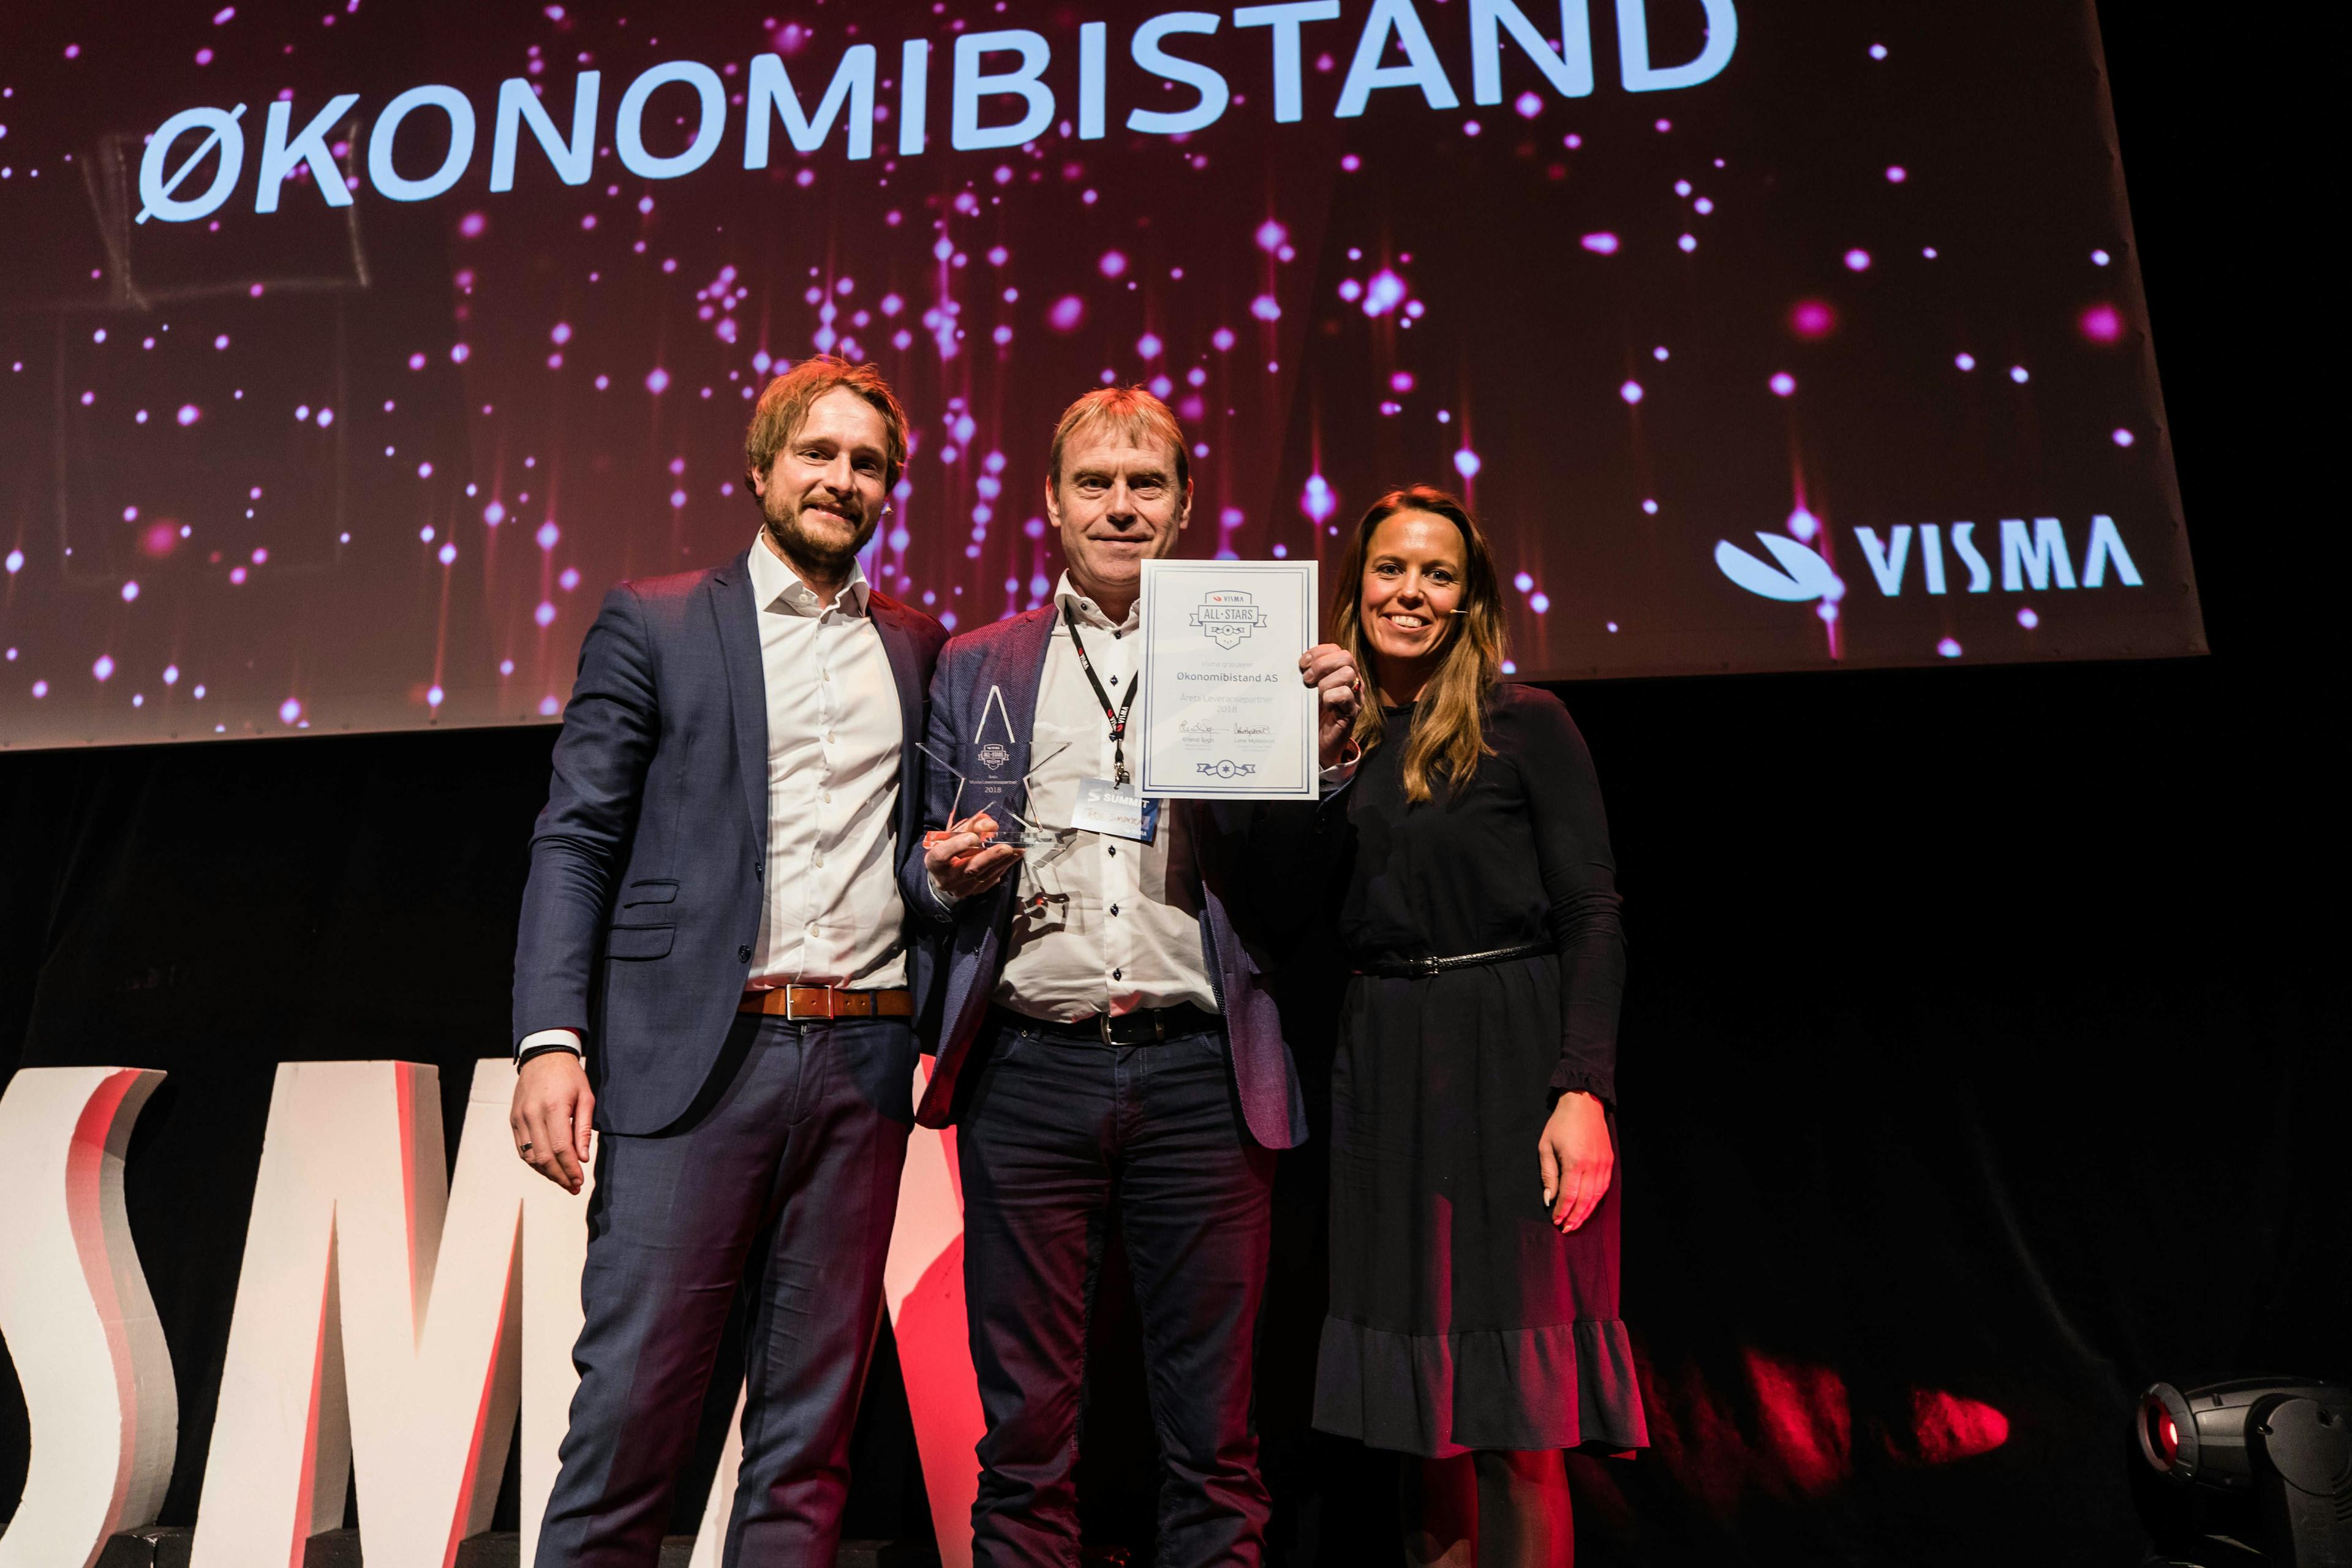 Visma All Stars, ØkonomiBistand ble årets leveransepartner 2018